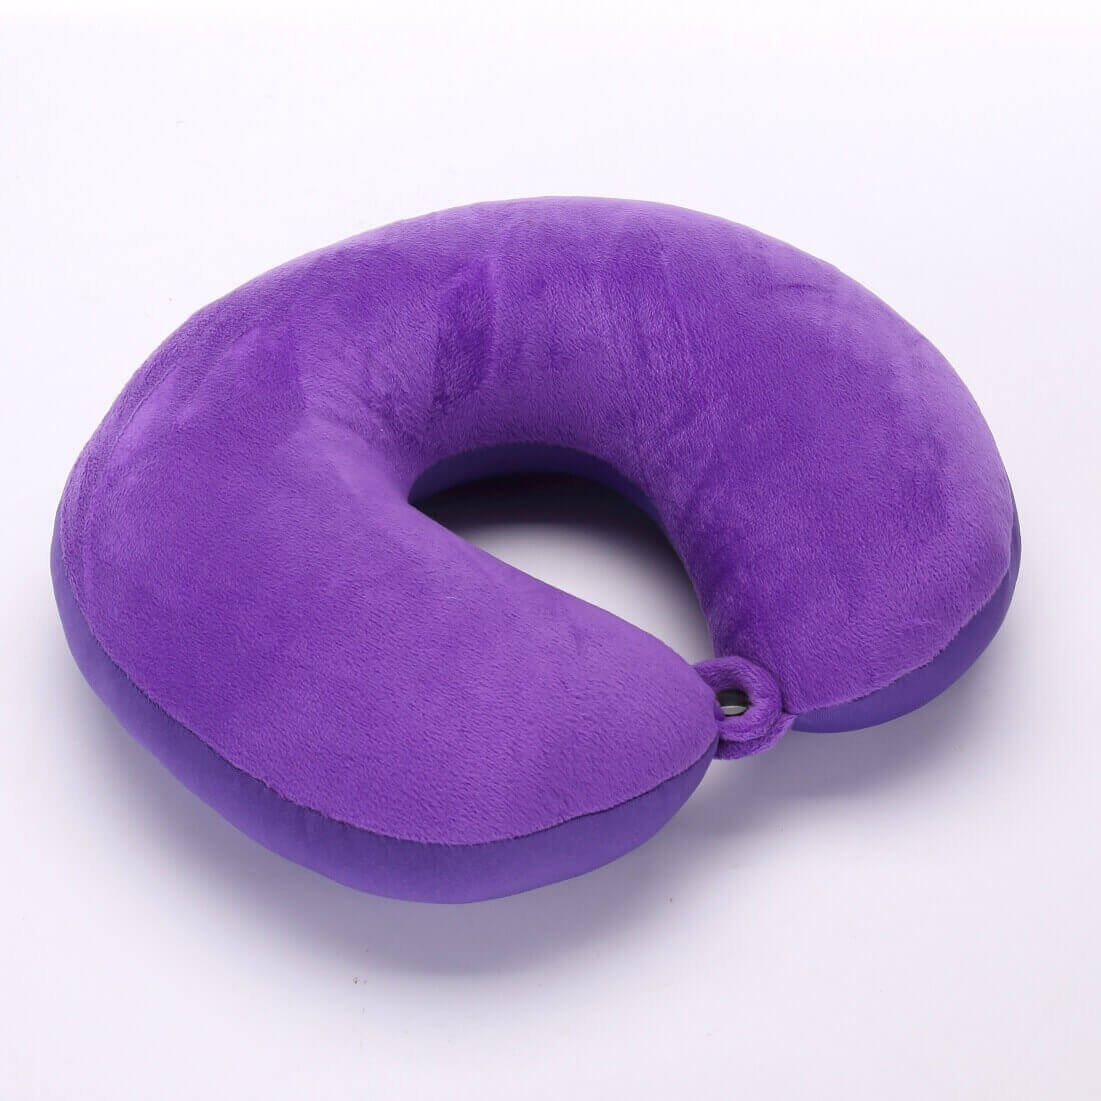 Fanwer memory foam travel pillow, purple